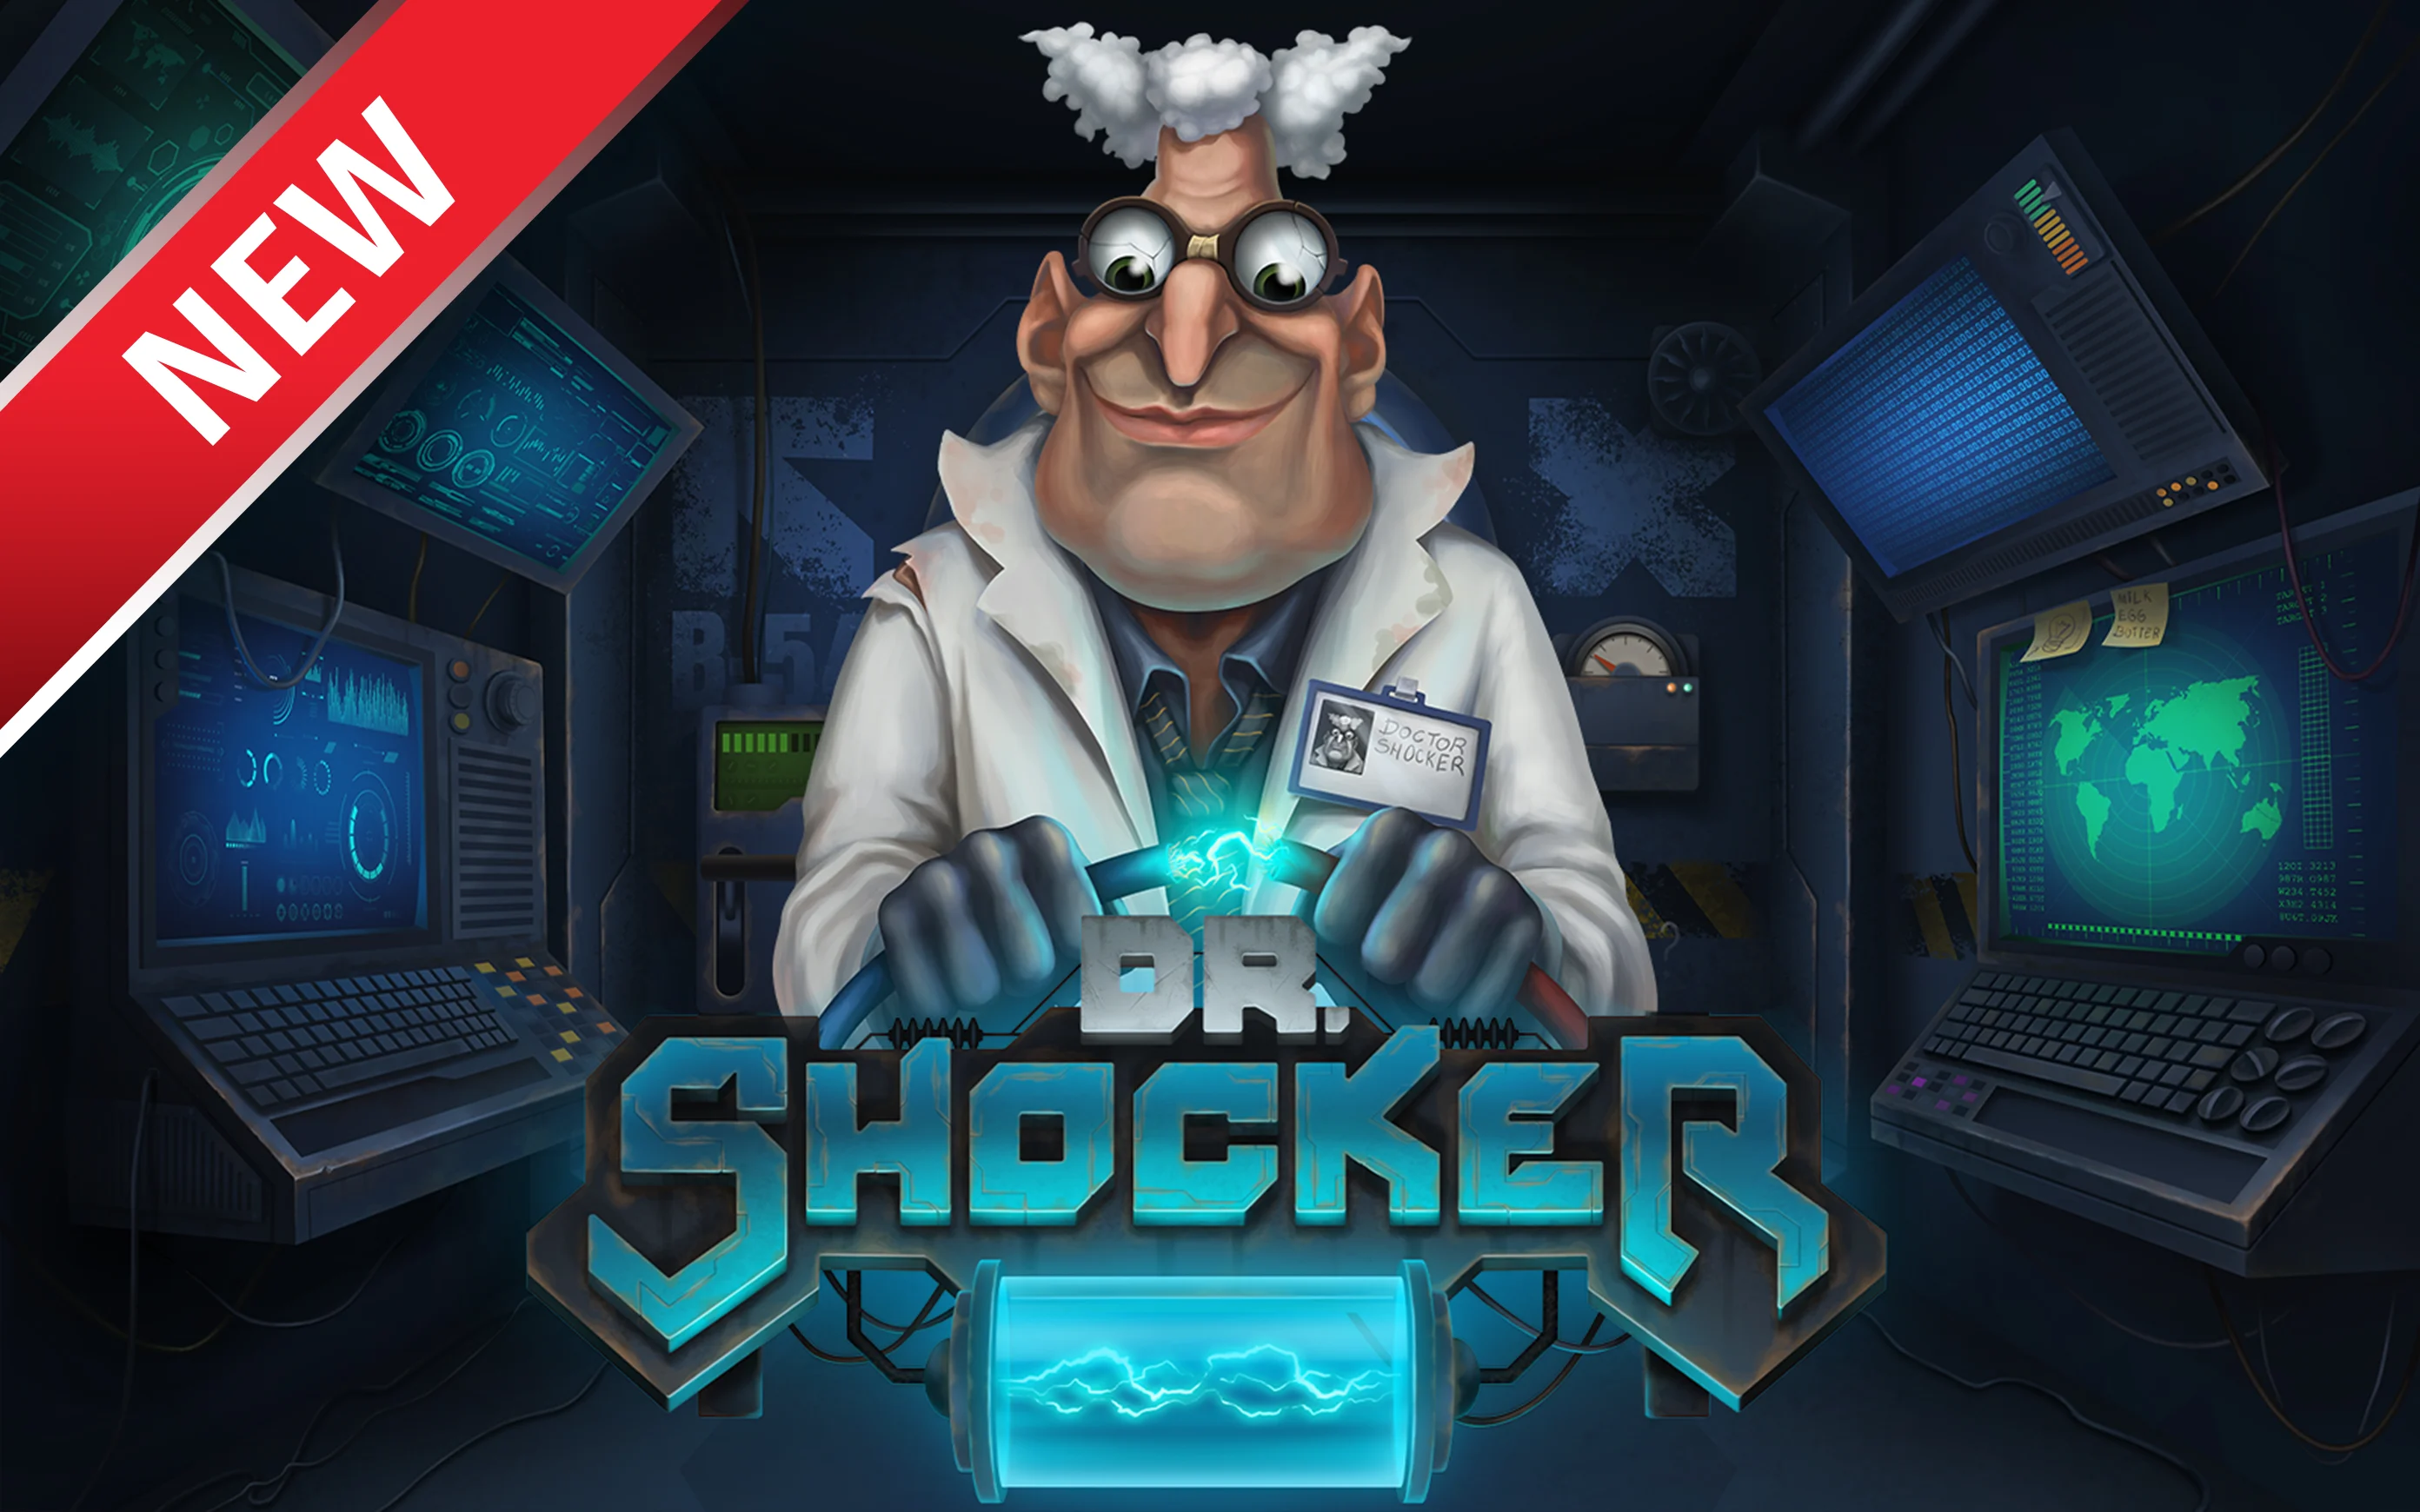 Spielen Sie Dr. Shocker auf Starcasino.be-Online-Casino